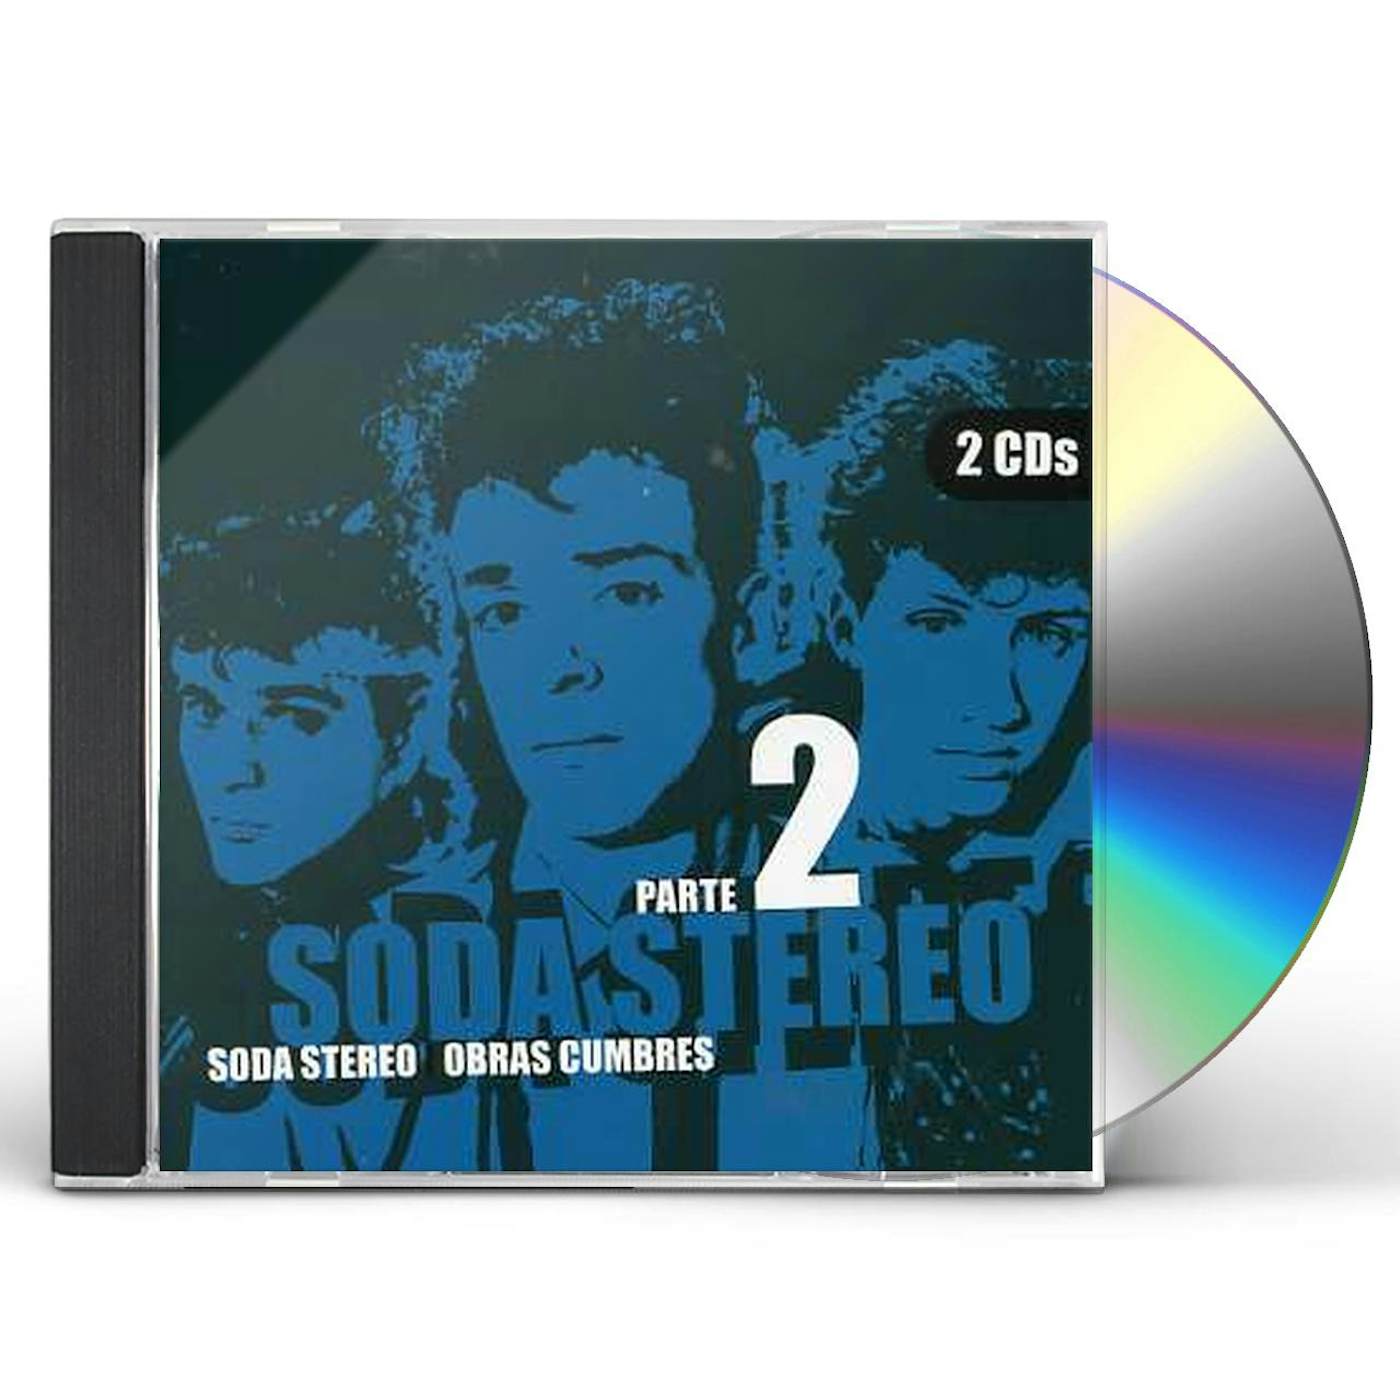 Soda Stereo OBRAS CUMBRES 2 CD